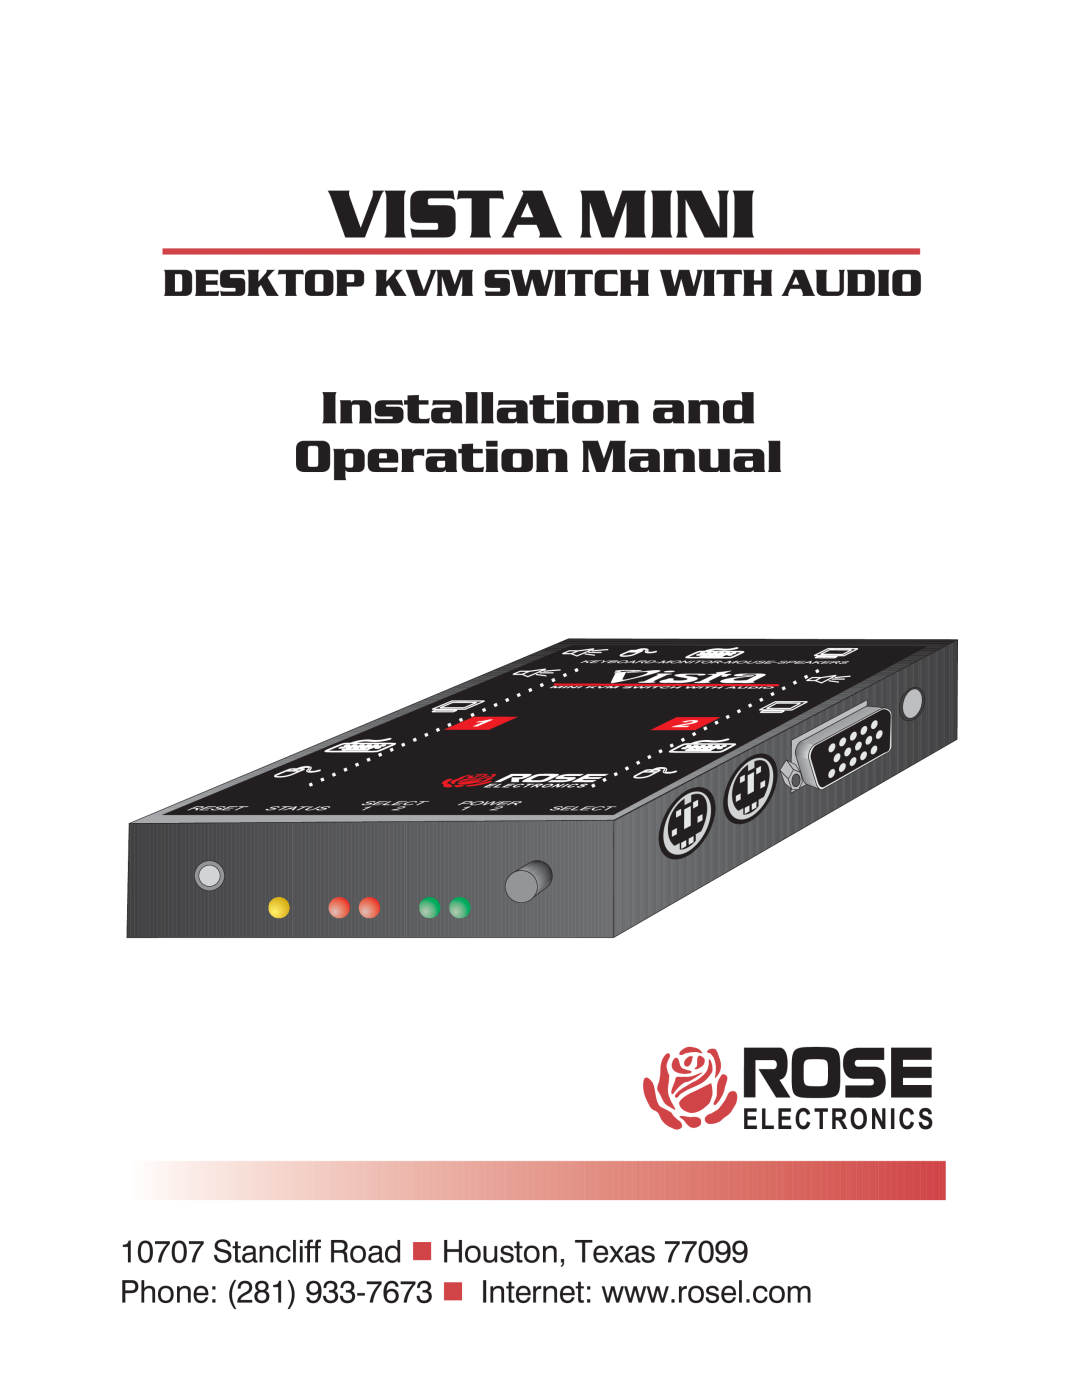 Rose electronic Vista Mini operation manual E L E C T R O N I C S, Installation and Operation Manual 